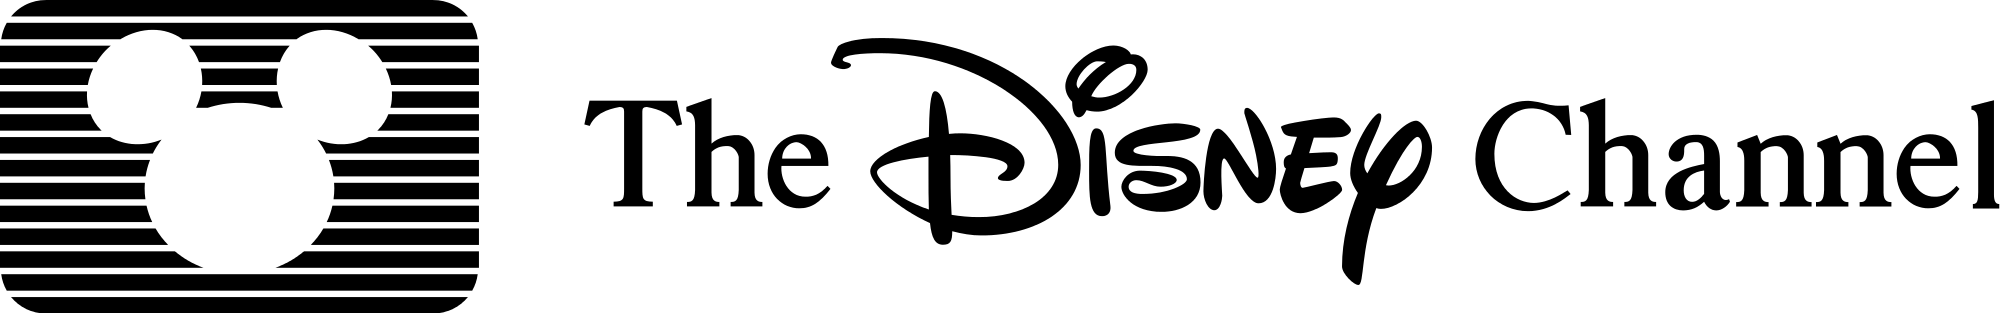 Old Disney Channel Logo - File:Walt Disney channel logo old.svg - Wikimedia Commons